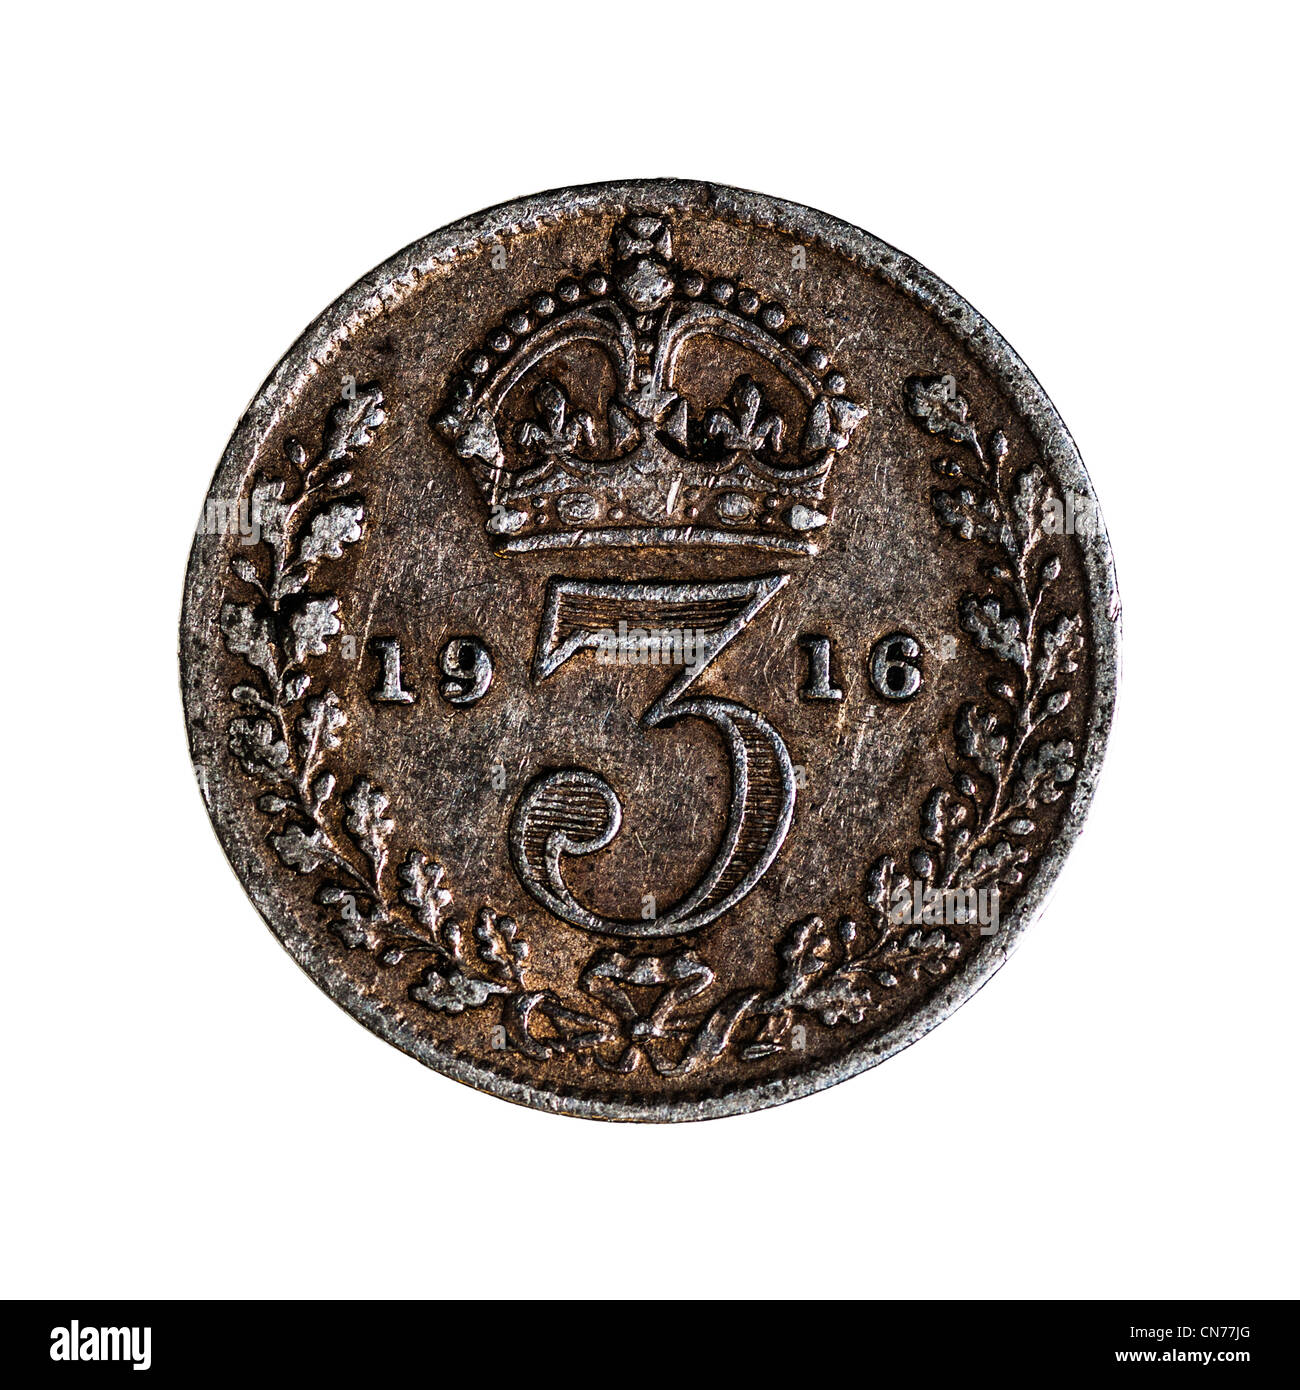 Un pre decimal George V argento britannico Threepence ( primo problema ) 3 pence moneta su sfondo bianco Foto Stock